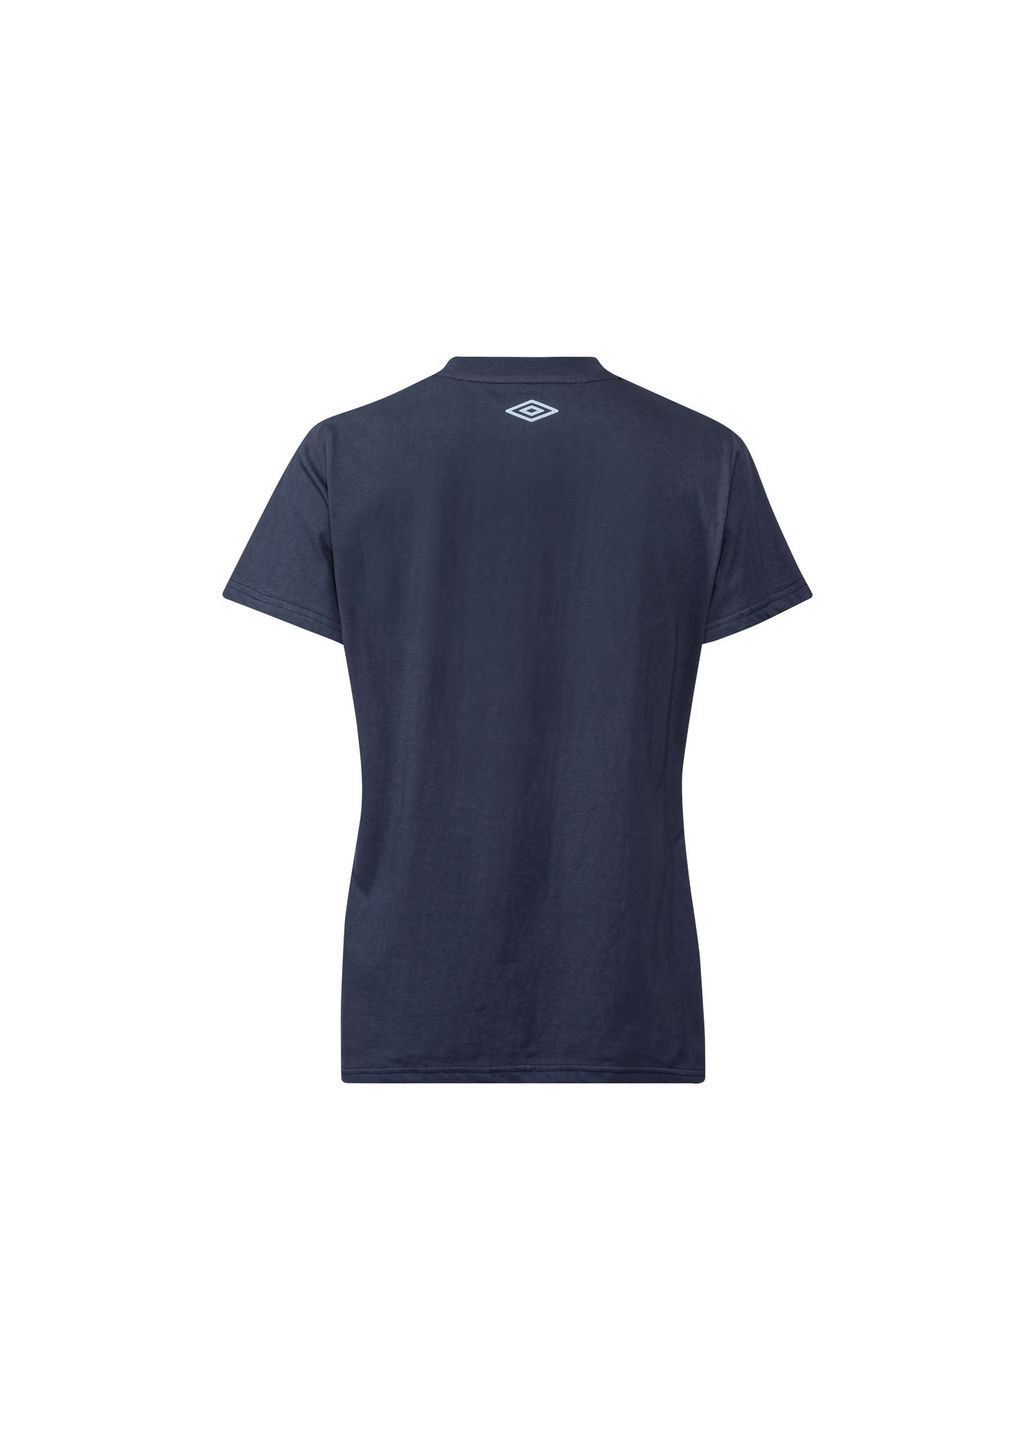 Темно-синяя демисезон футболка с принтом для женщины 401118_2107 Umbro